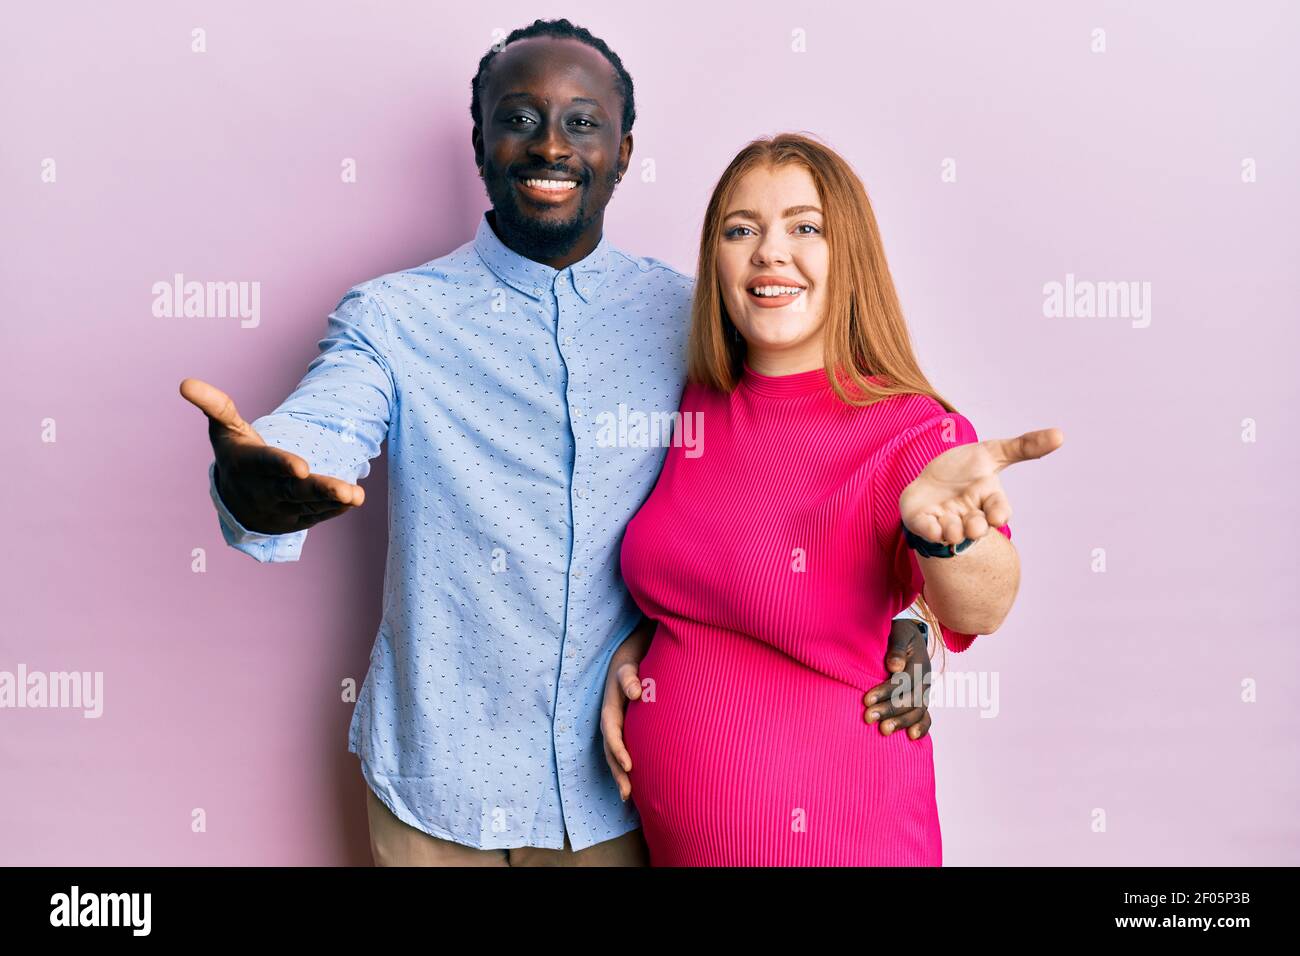 Interracial Relationships Symbols Pregnant